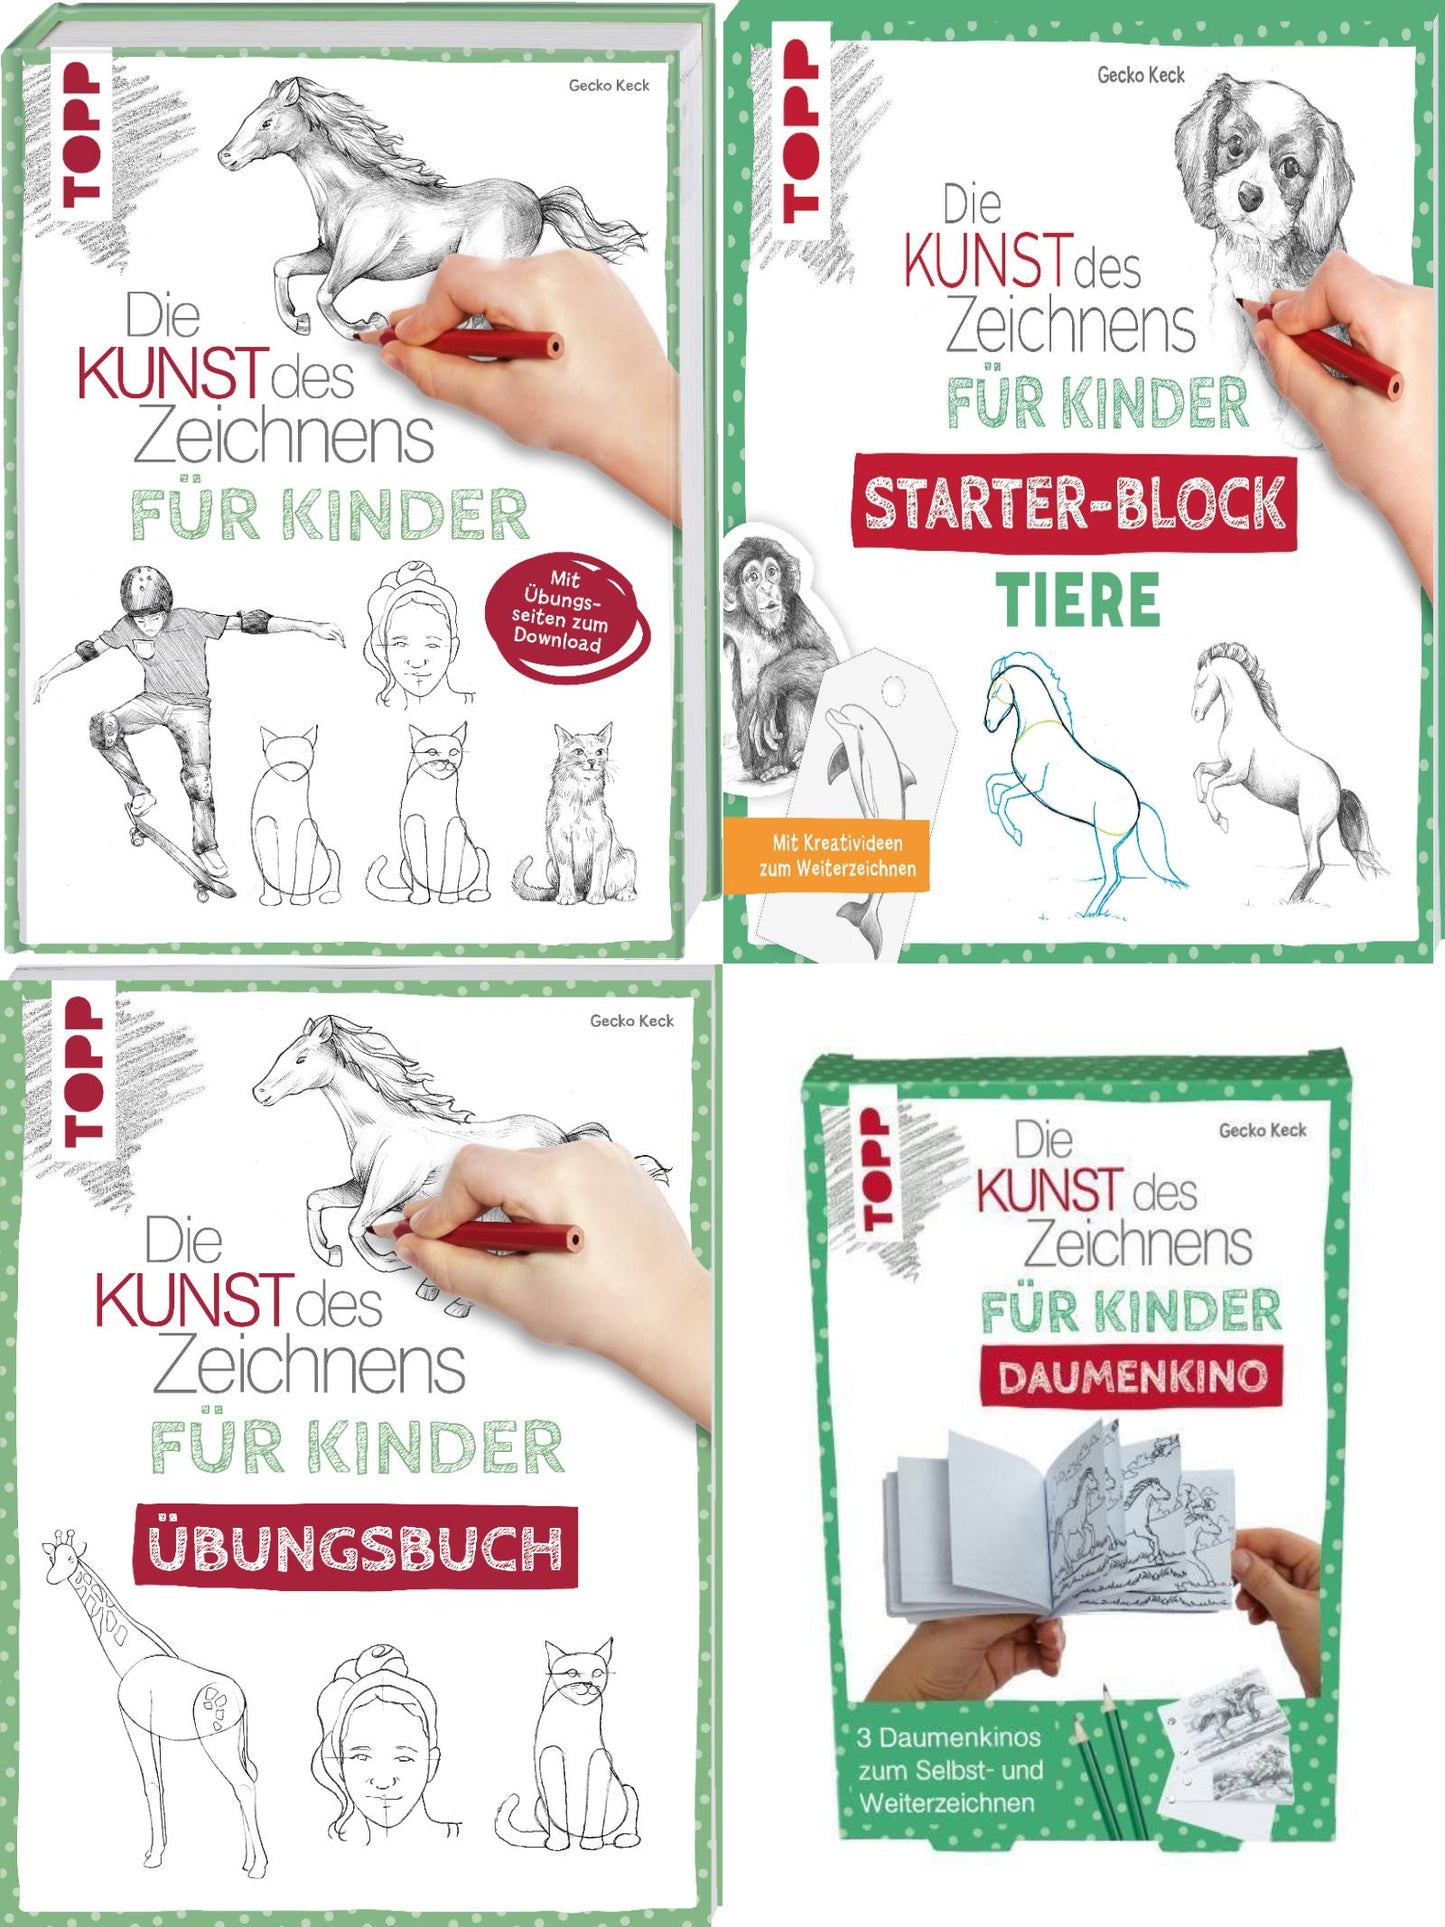 Die Kunst des Zeichnens für Kinder inkl. Übungsbuch und Daumenkino + 1 exklusives Postkartenset